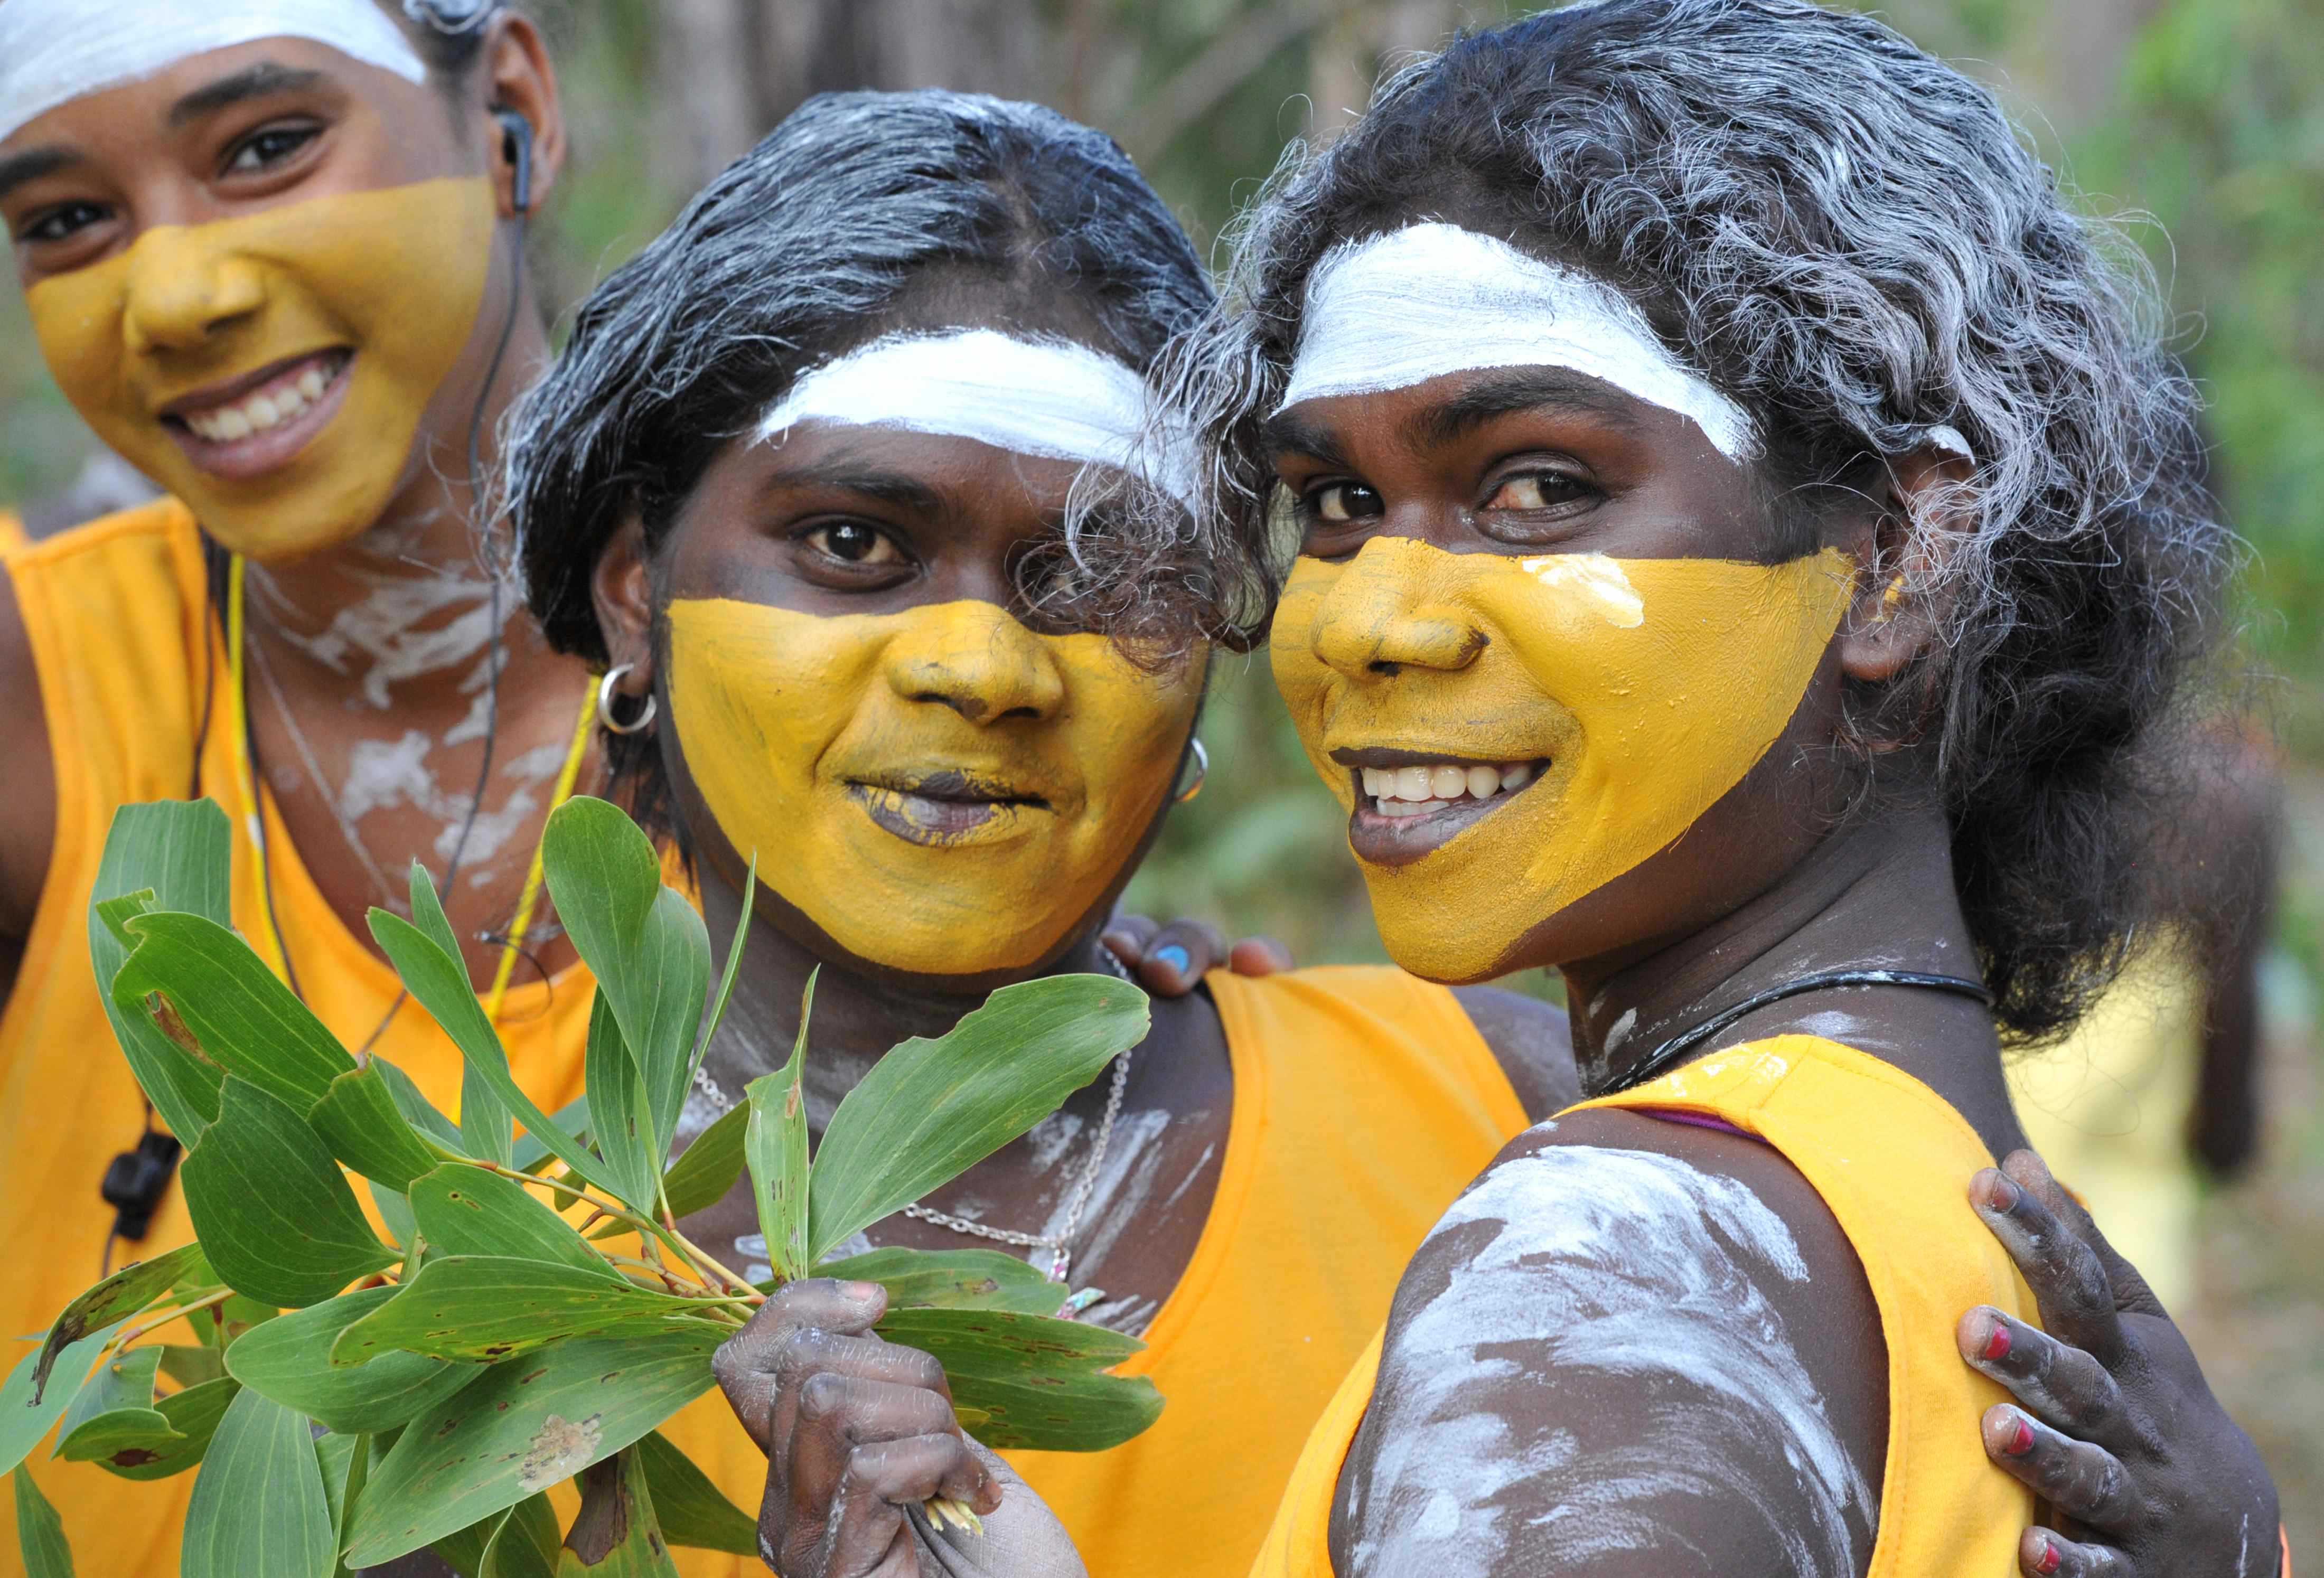 Australian Yolngu people preparing for traditional ceremonies